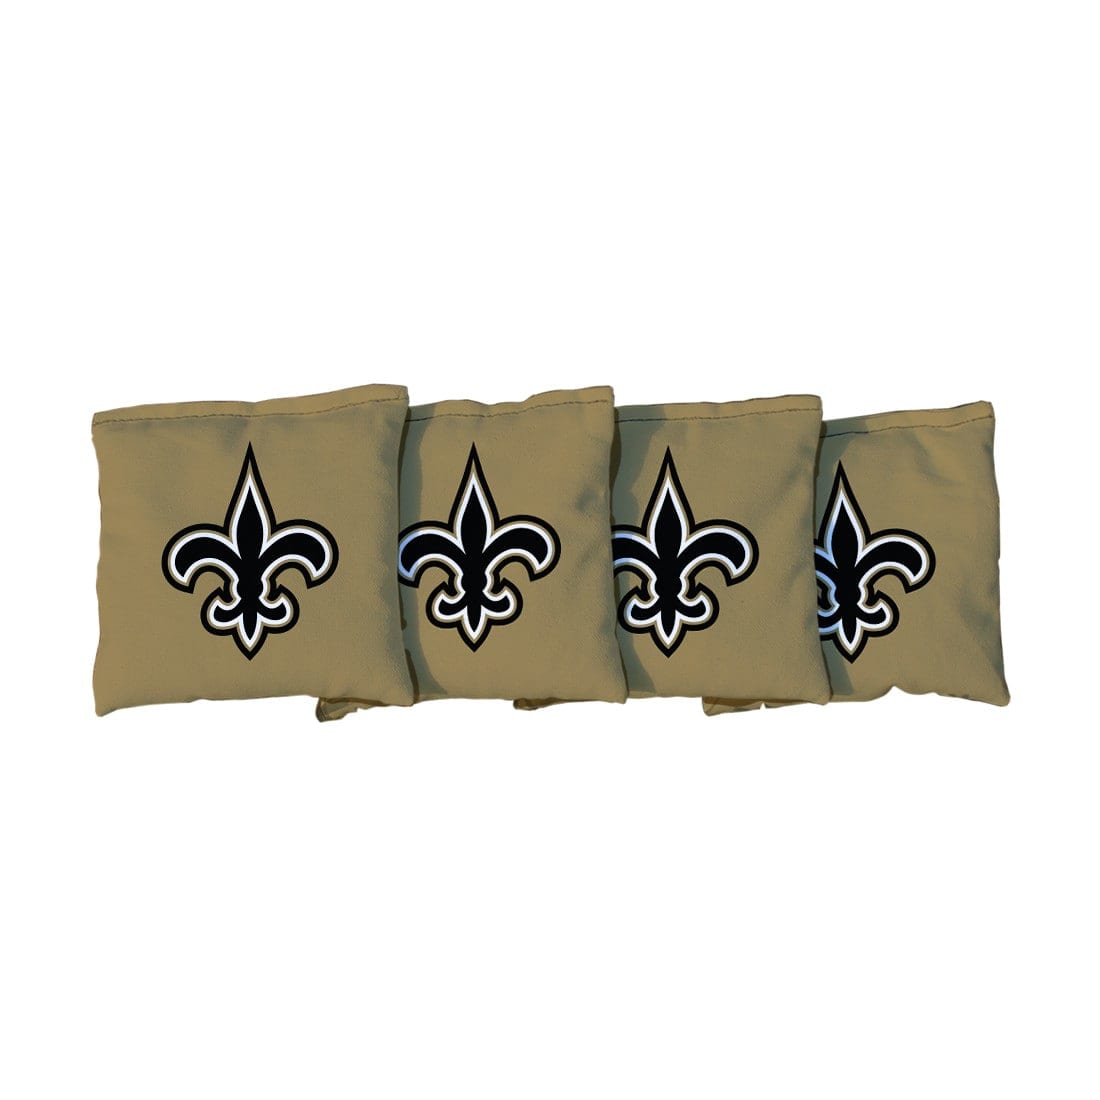 New Orleans Saints NFL Gold Cornhole Bags